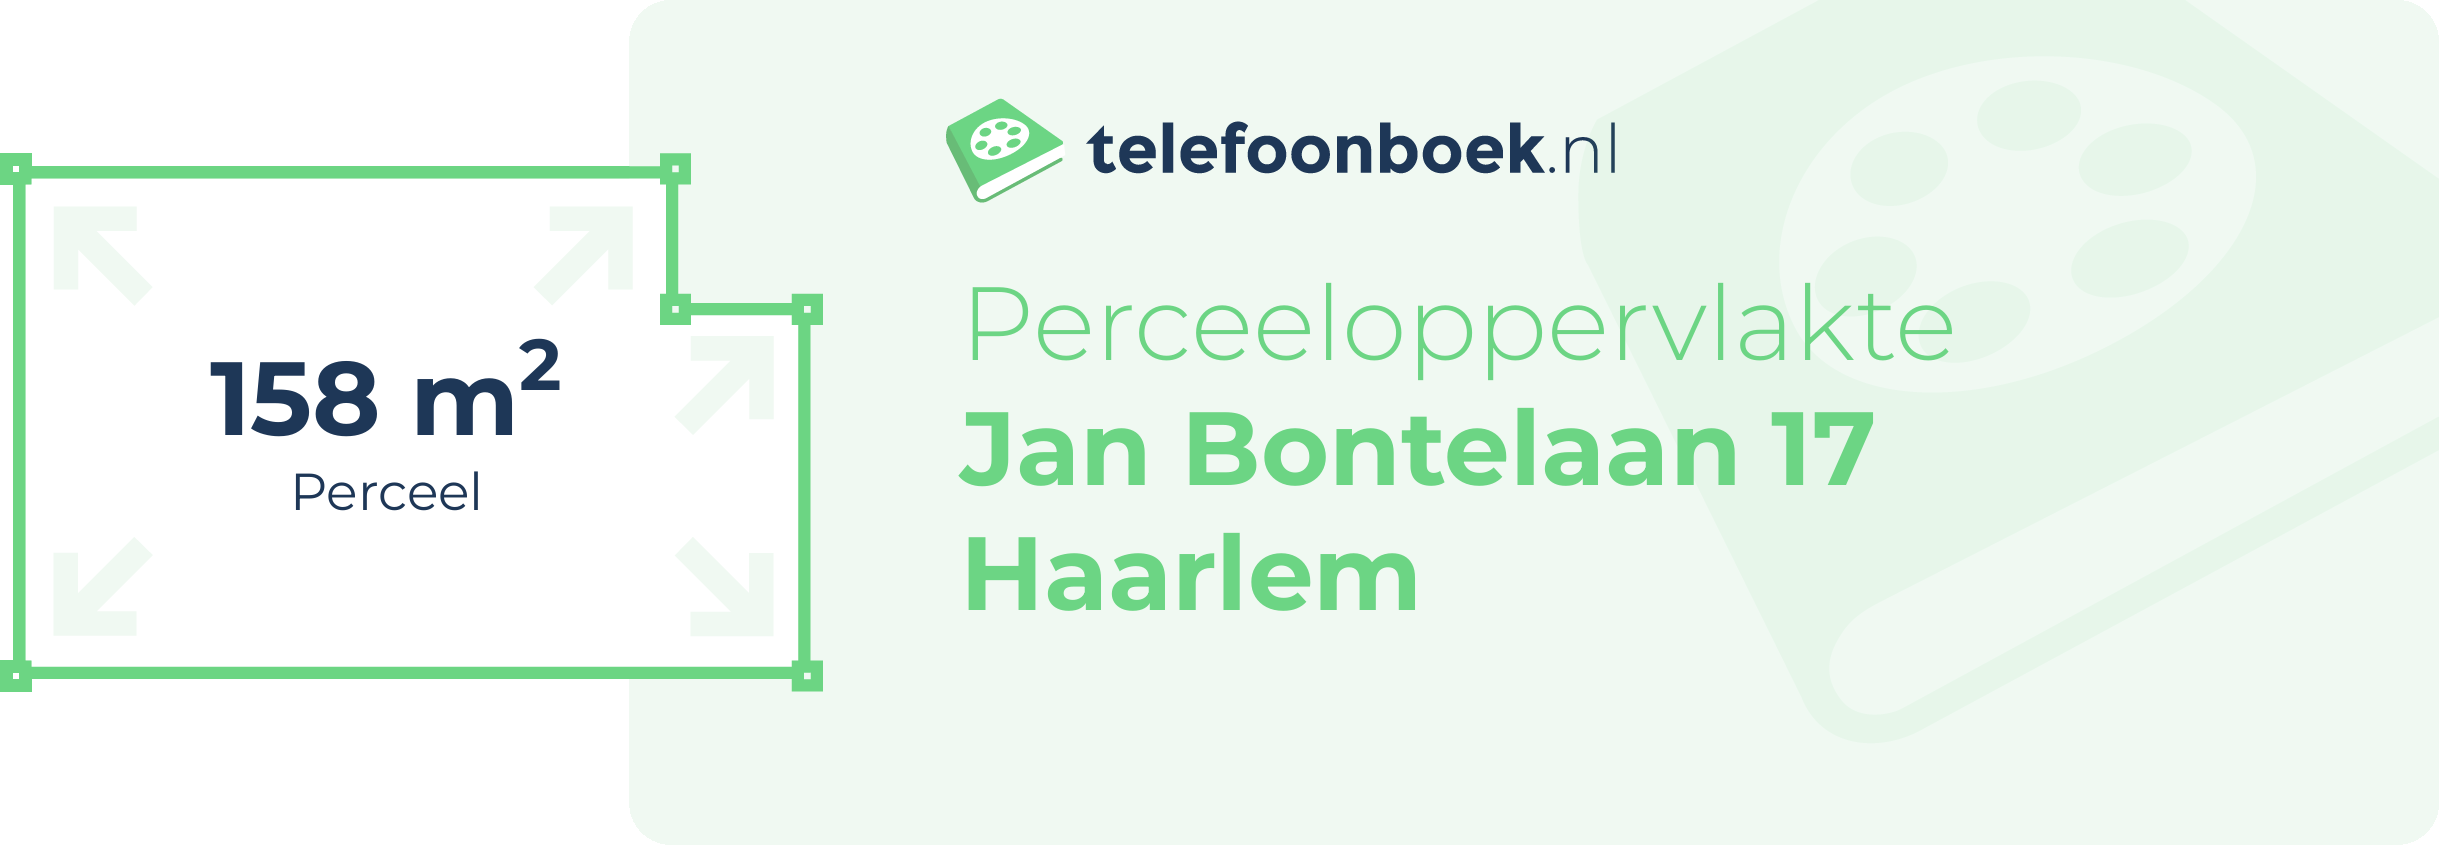 Perceeloppervlakte Jan Bontelaan 17 Haarlem